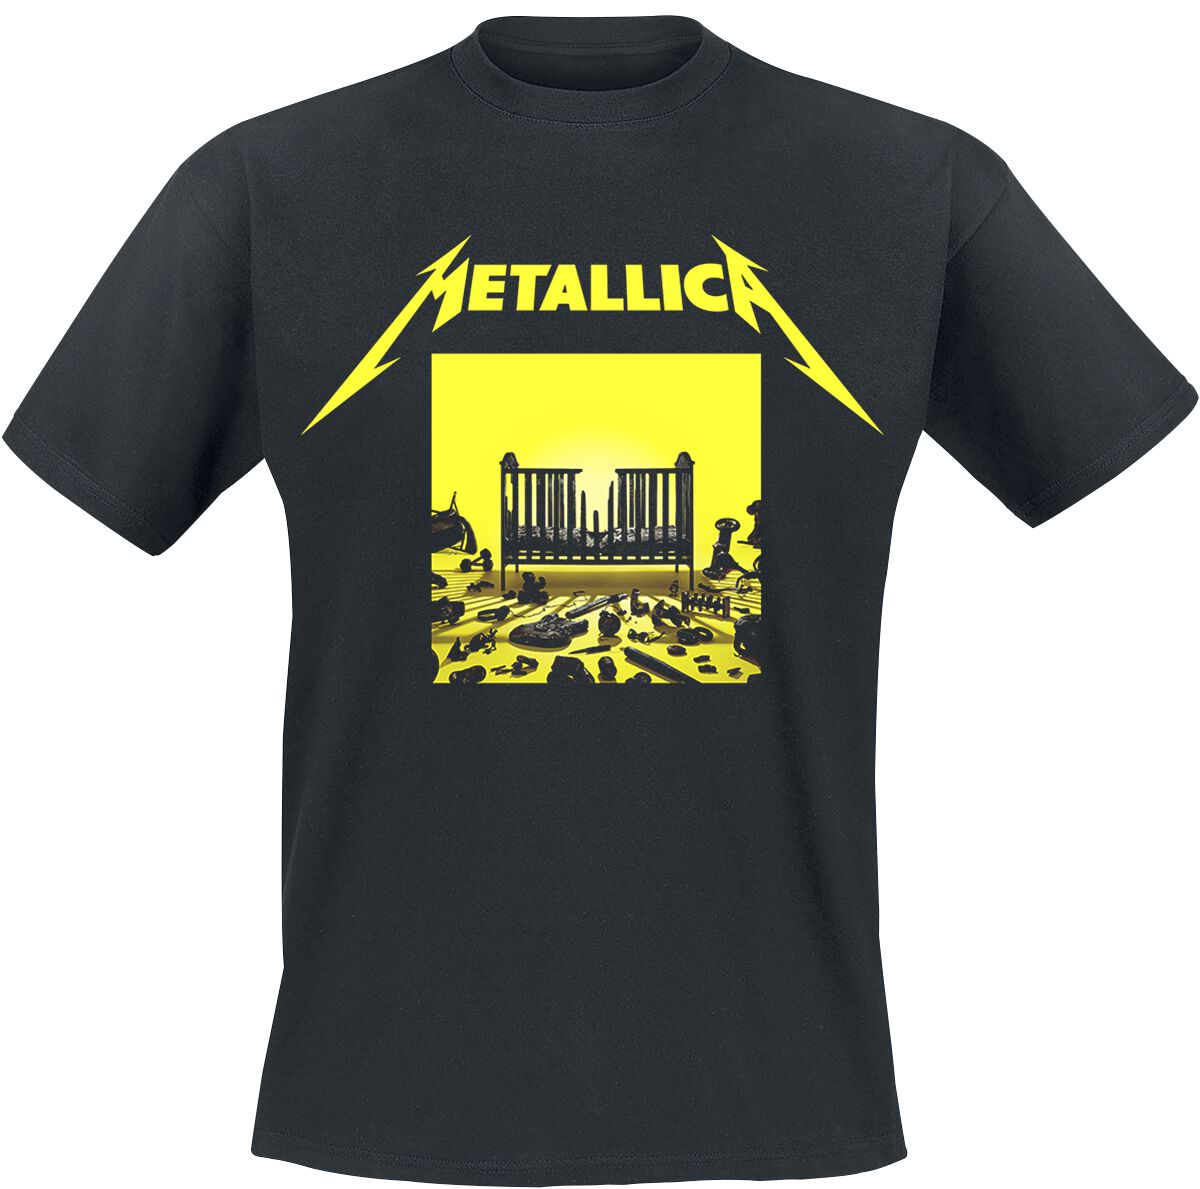 Metallica T-Shirt - M72 Squared Cover - S bis 5XL - für Männer - Größe L - schwarz  - Lizenziertes Merchandise!